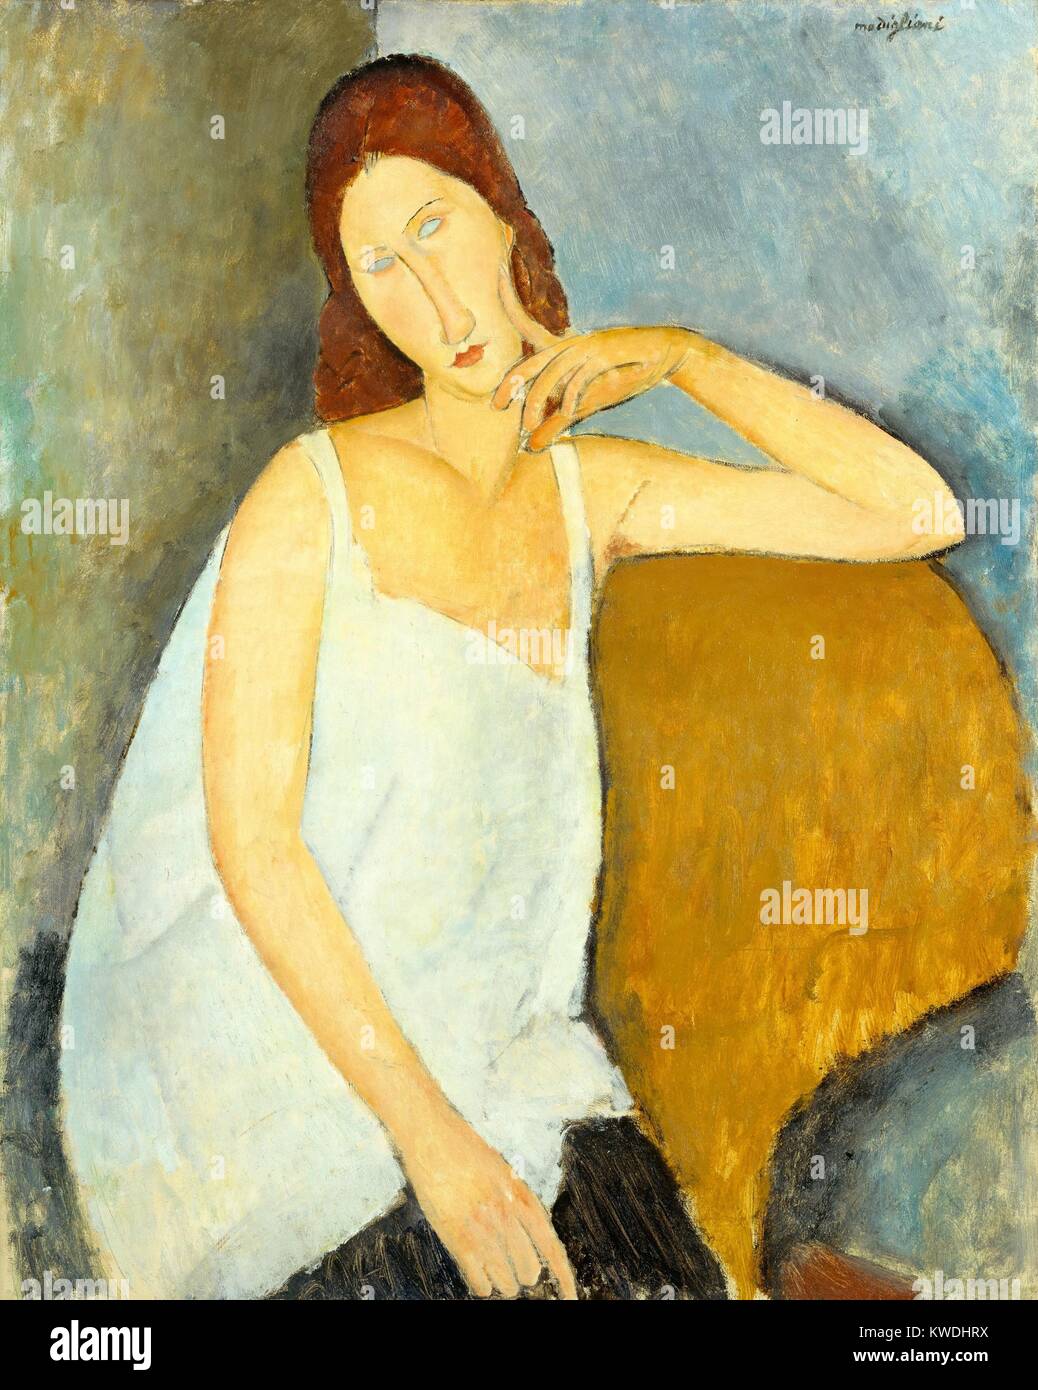 JEANNE HEBUTERNE, par Amedeo Modigliani, 1919, la peinture moderniste Italienne, huile sur toile. Hebuterne, les artistes 21 ans maîtresse, était enceinte de leur deuxième enfant. Ce portrait est peint avec Modigliani de stylisation et élongations (BSLOC 2017 7 16) Banque D'Images